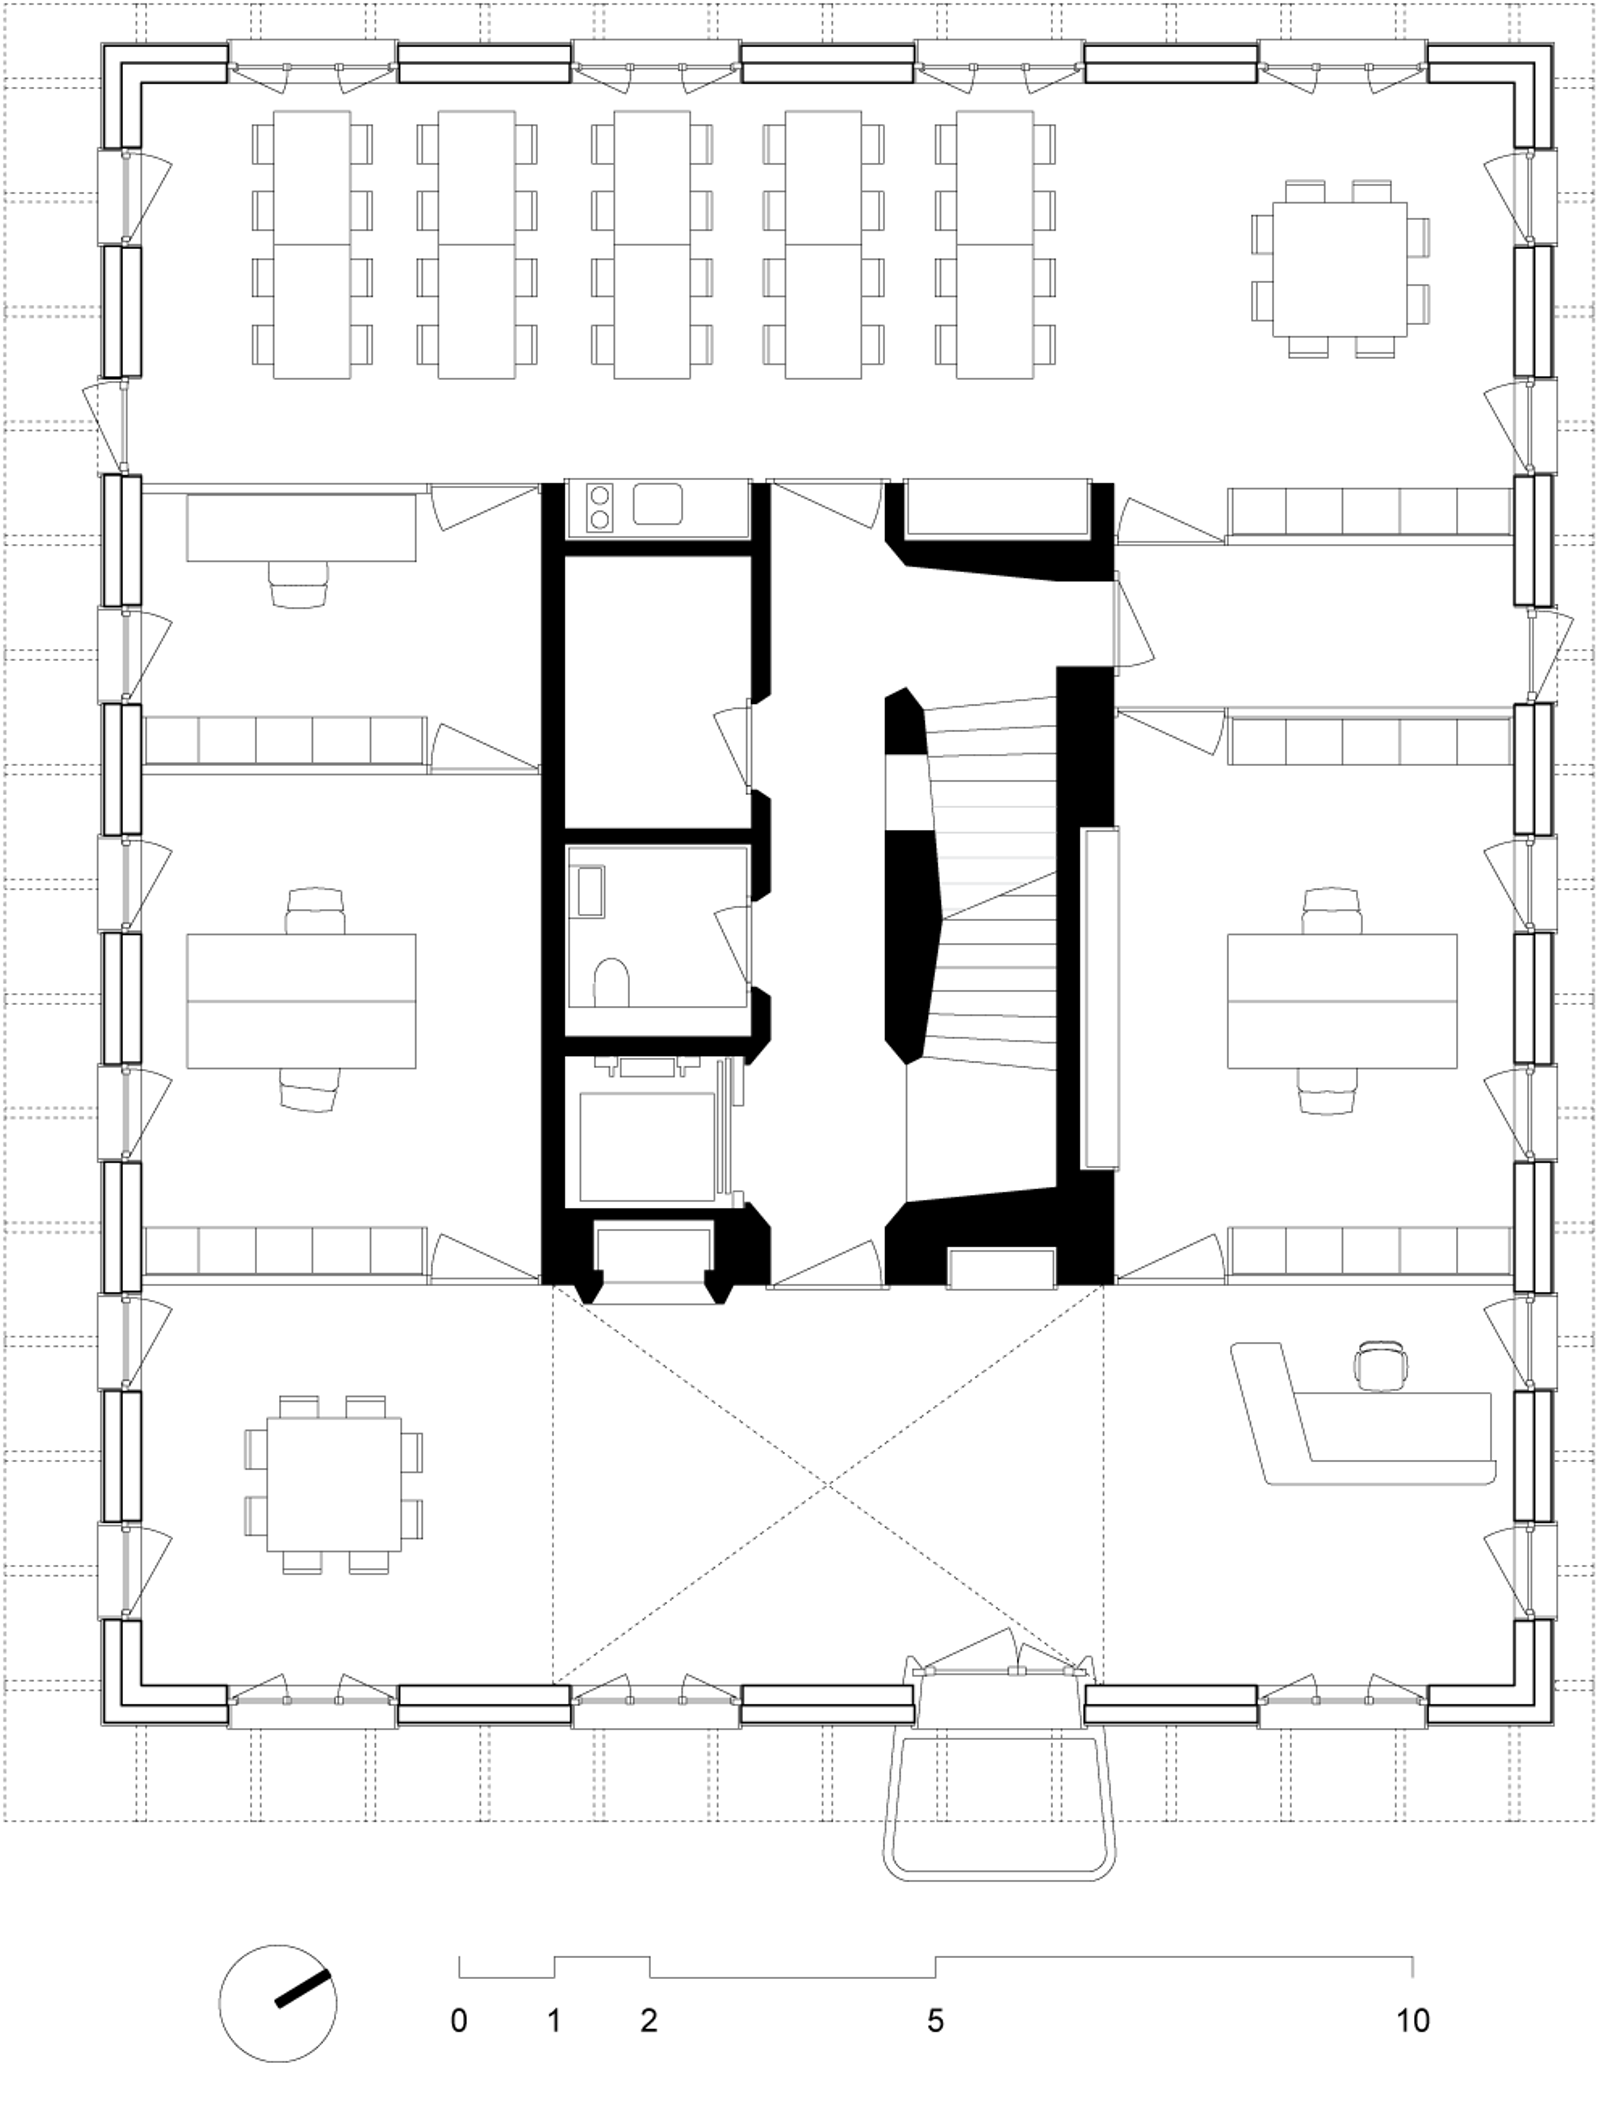 Første etasje plan av kontorbygg. Arkitekt tegning.